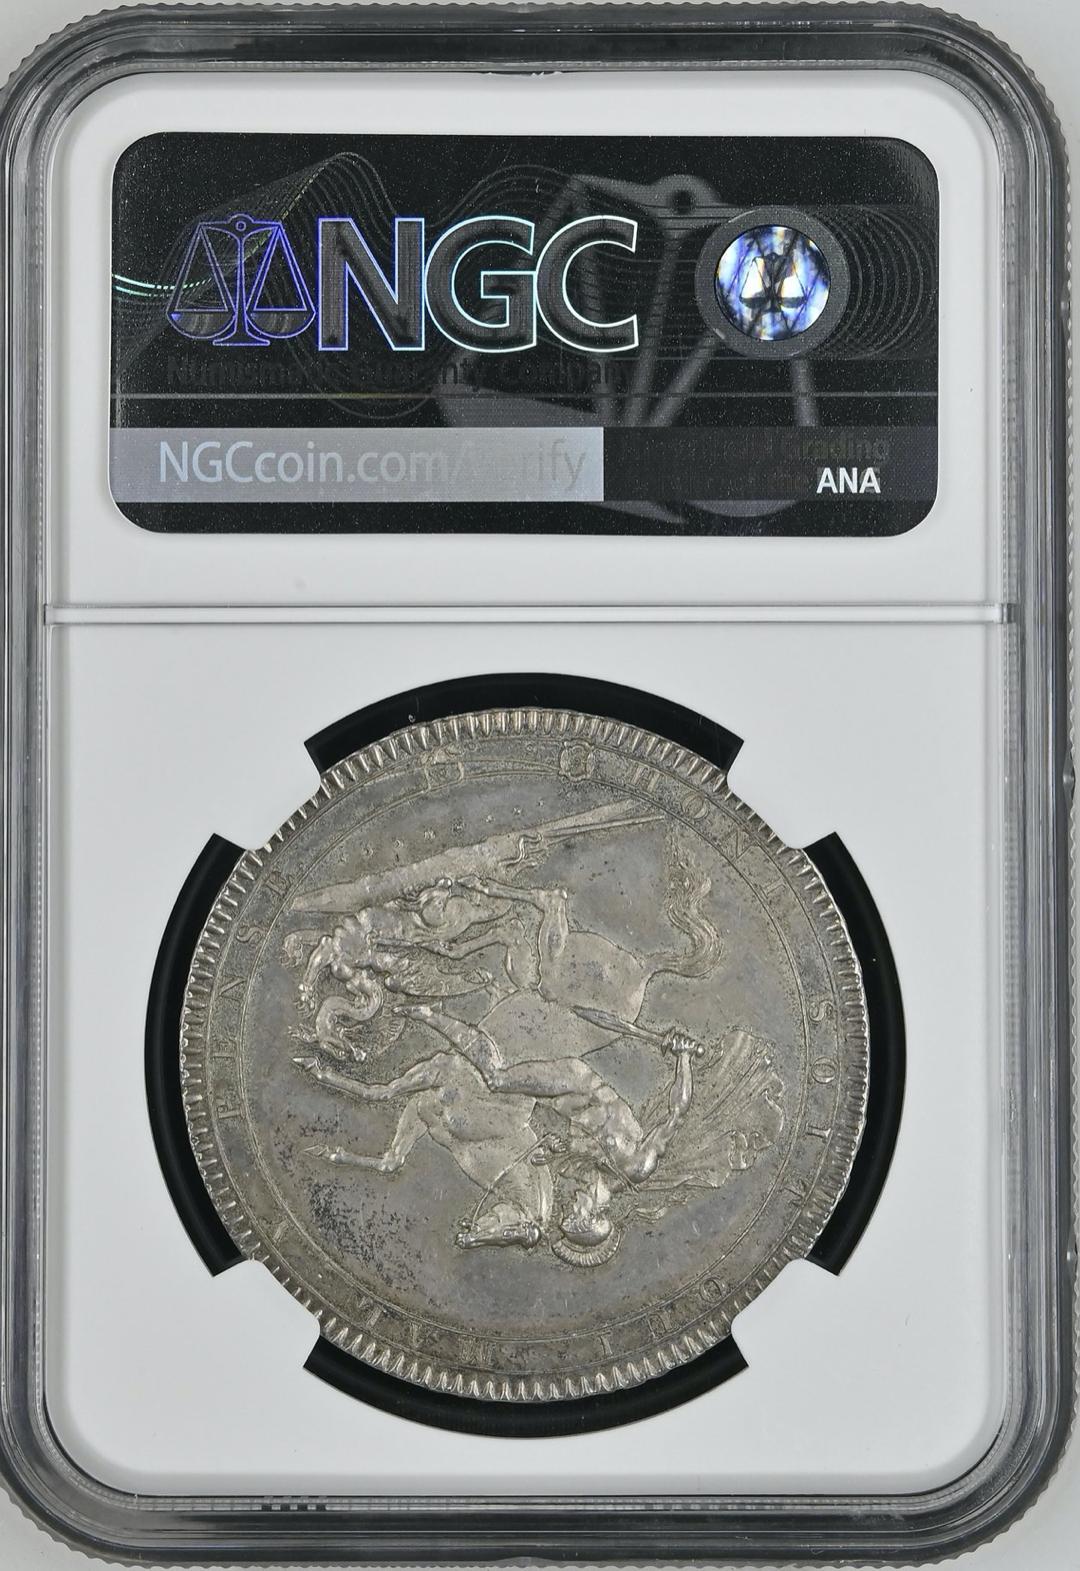 イギリス1818年ジョージ3世クラウン銀貨NGC MS64画像